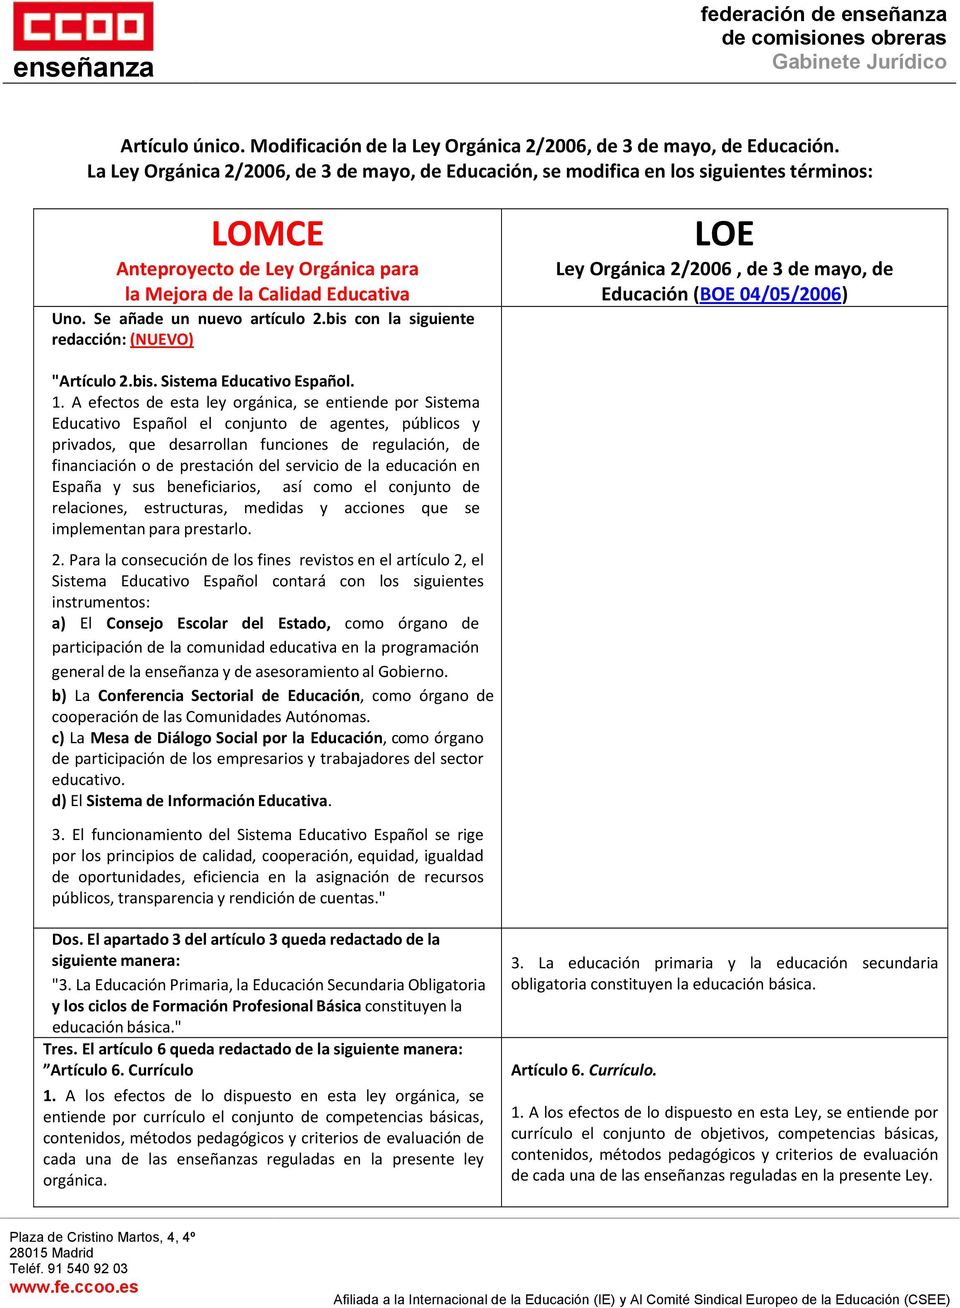 bis con la siguiente redacción: (NUEVO) LOE Ley Orgánica 2/2006, de 3 de mayo, de Educación (BOE 04/05/2006) "Artículo 2.bis. Sistema Educativo Español. 1.